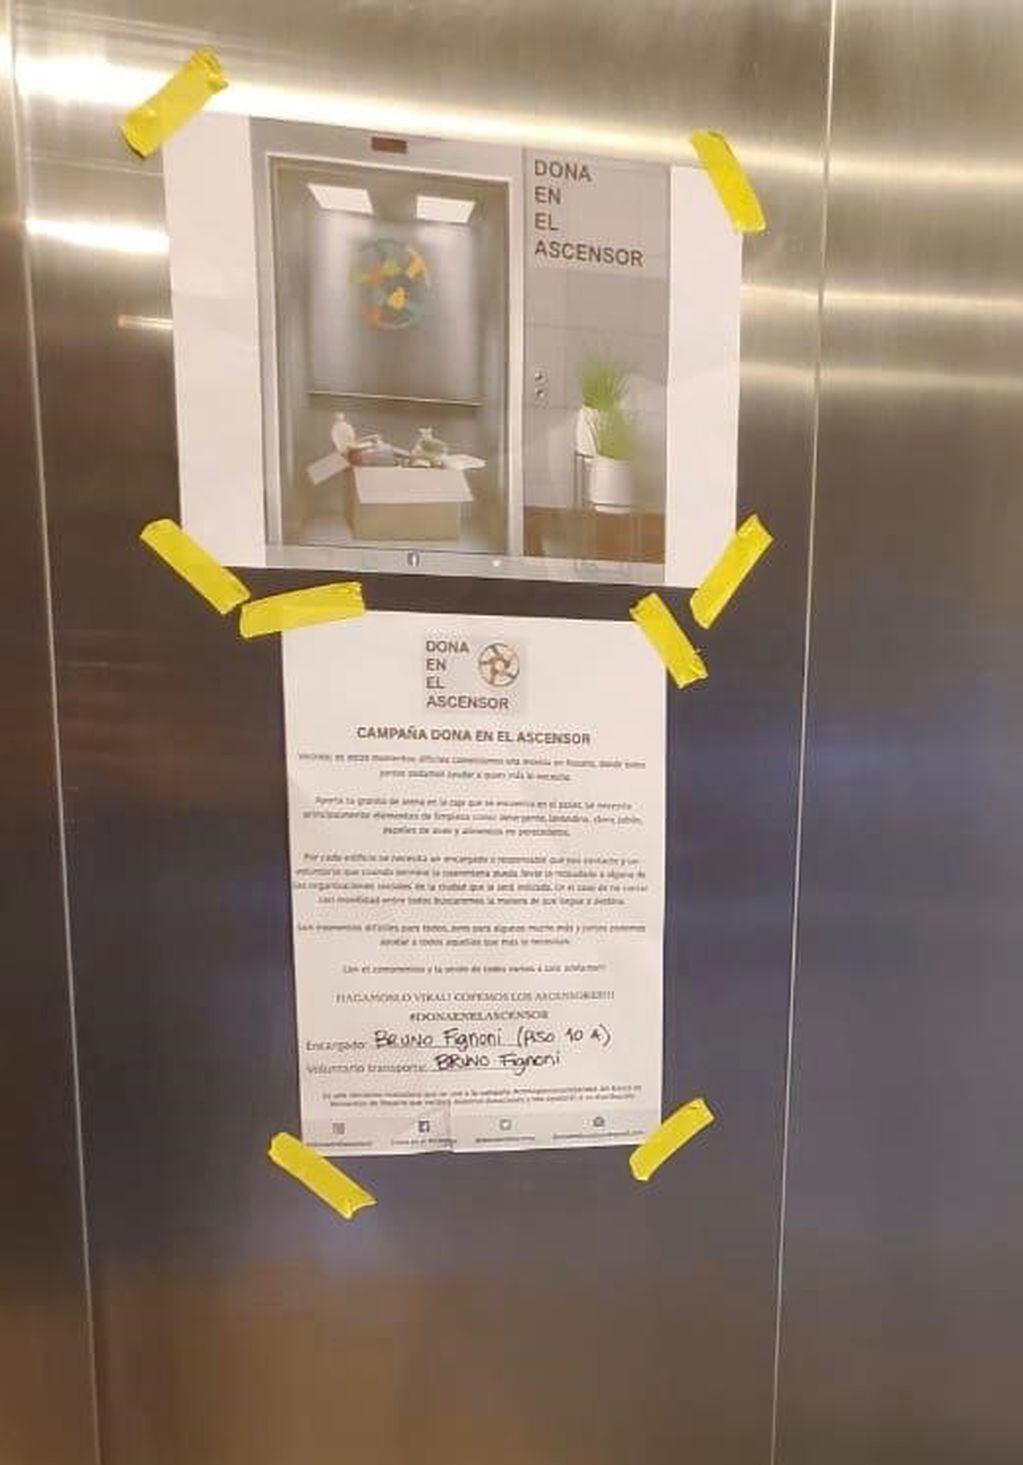 La iniciativa "Doná en el ascensor" se replica en una veintena de edificios de Rosario. (Vía Rosario)